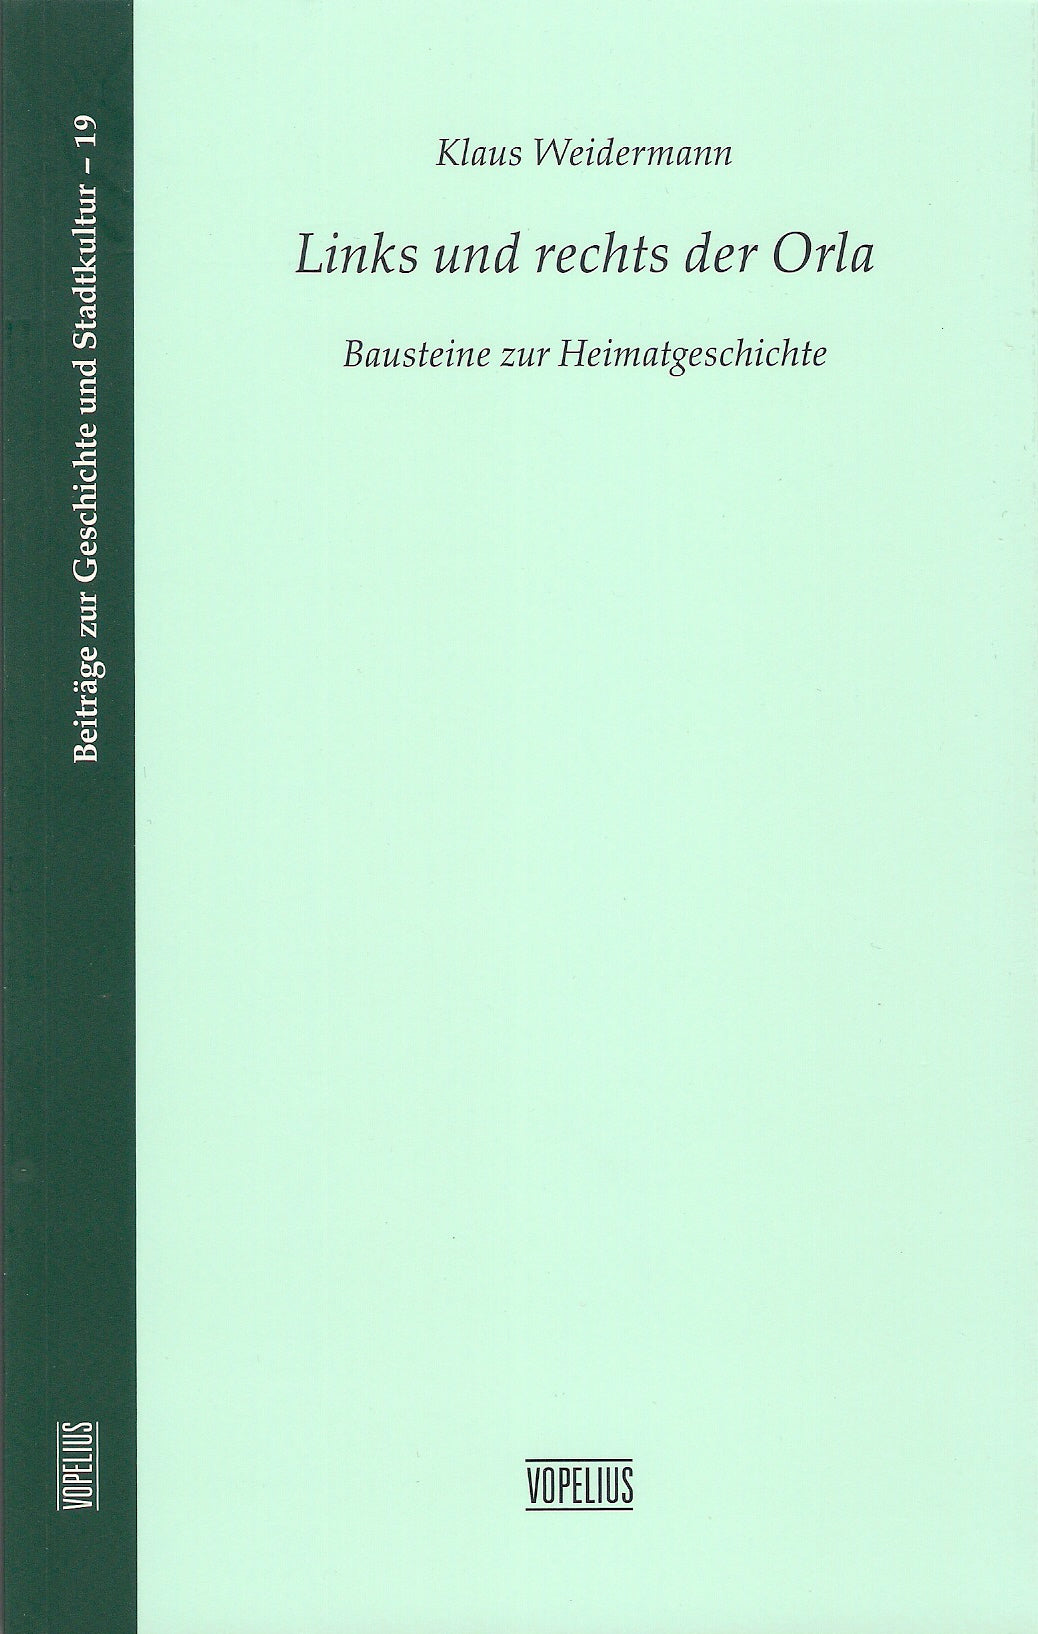 Links und rechts der Orla - Bausteine zur Heimatgeschichte - Band 19